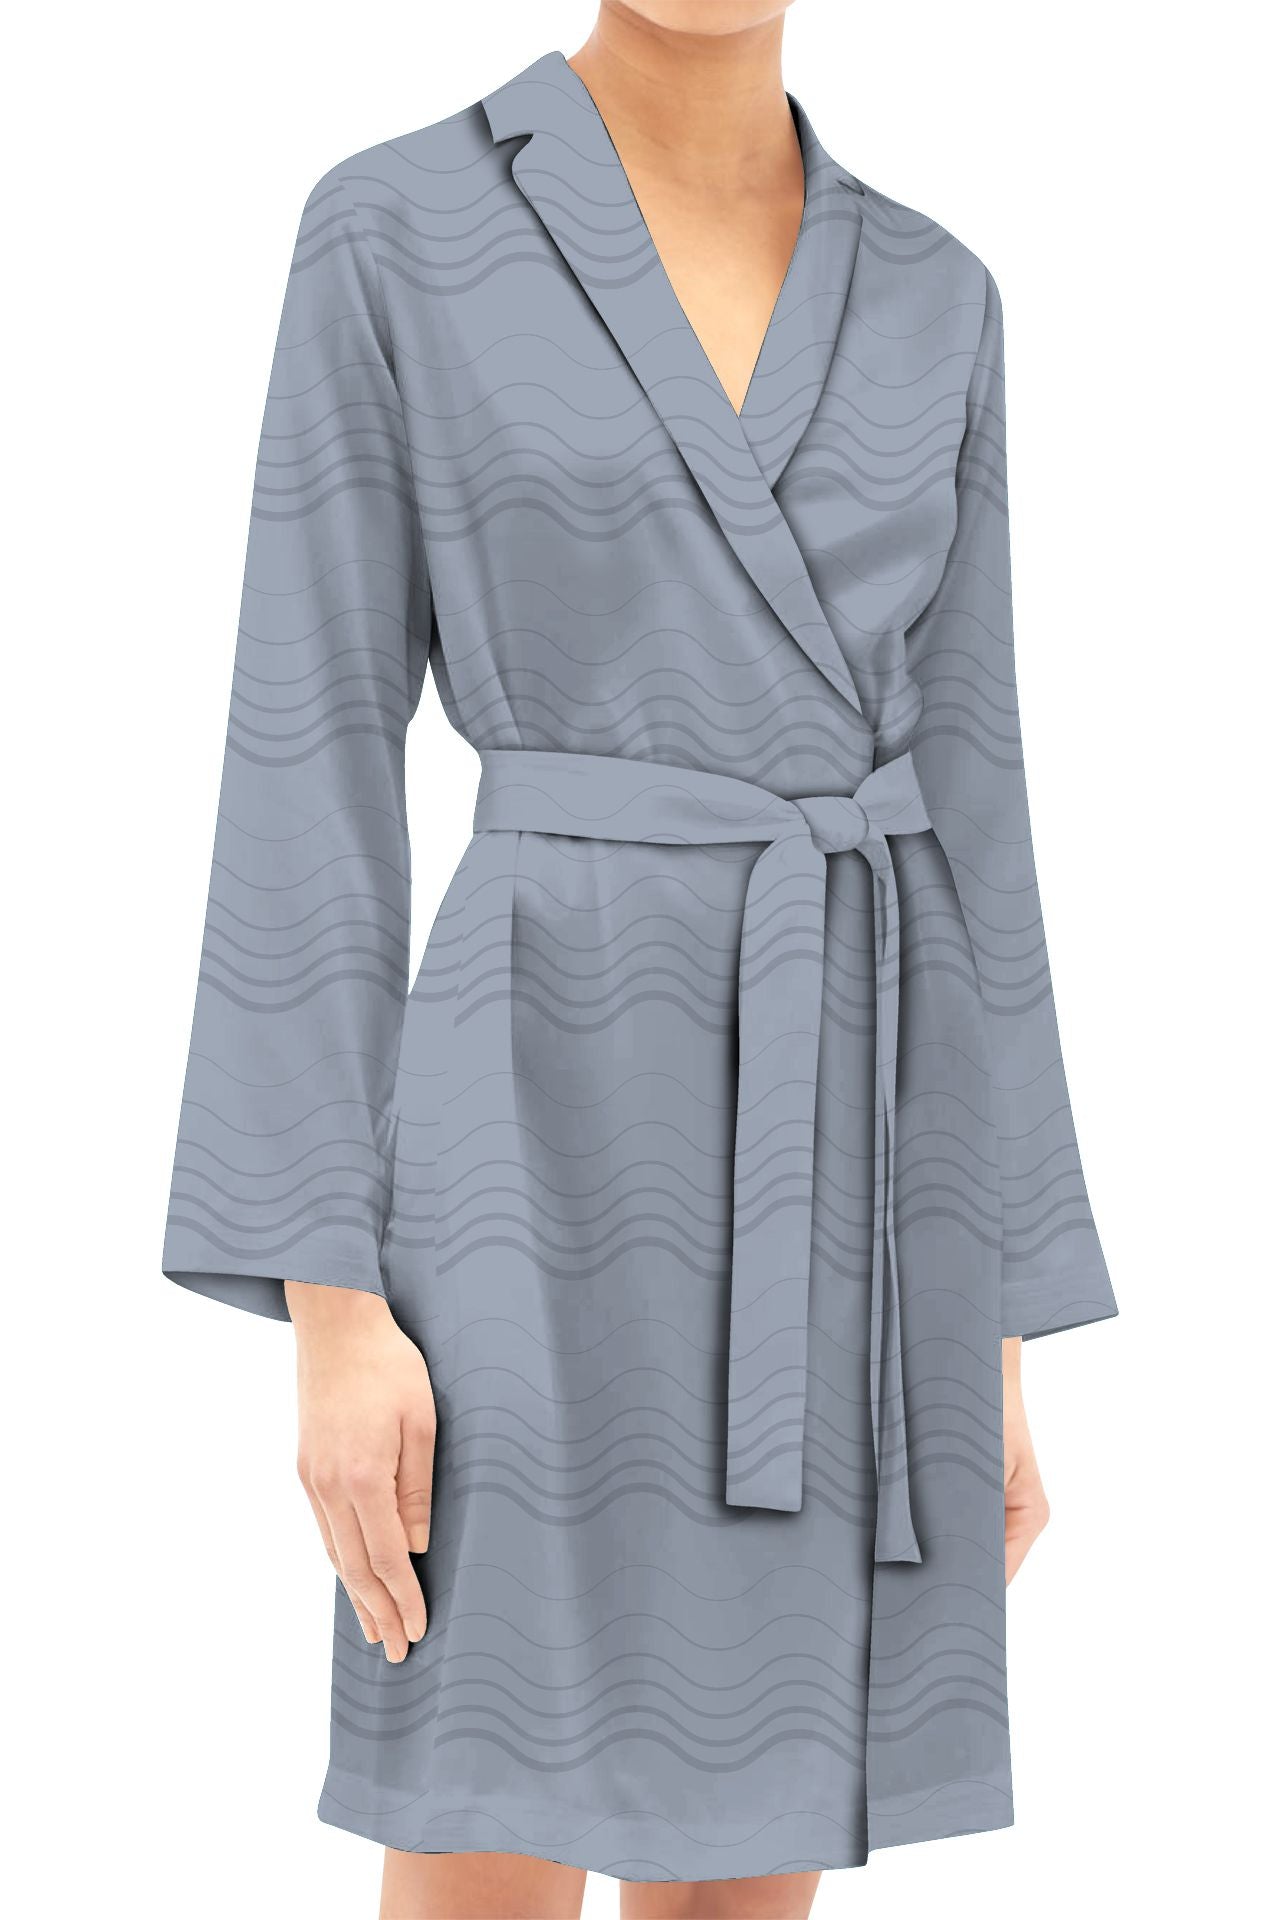 Grey Wrap Dress Made With Vegan Silk Cupro Mini Length